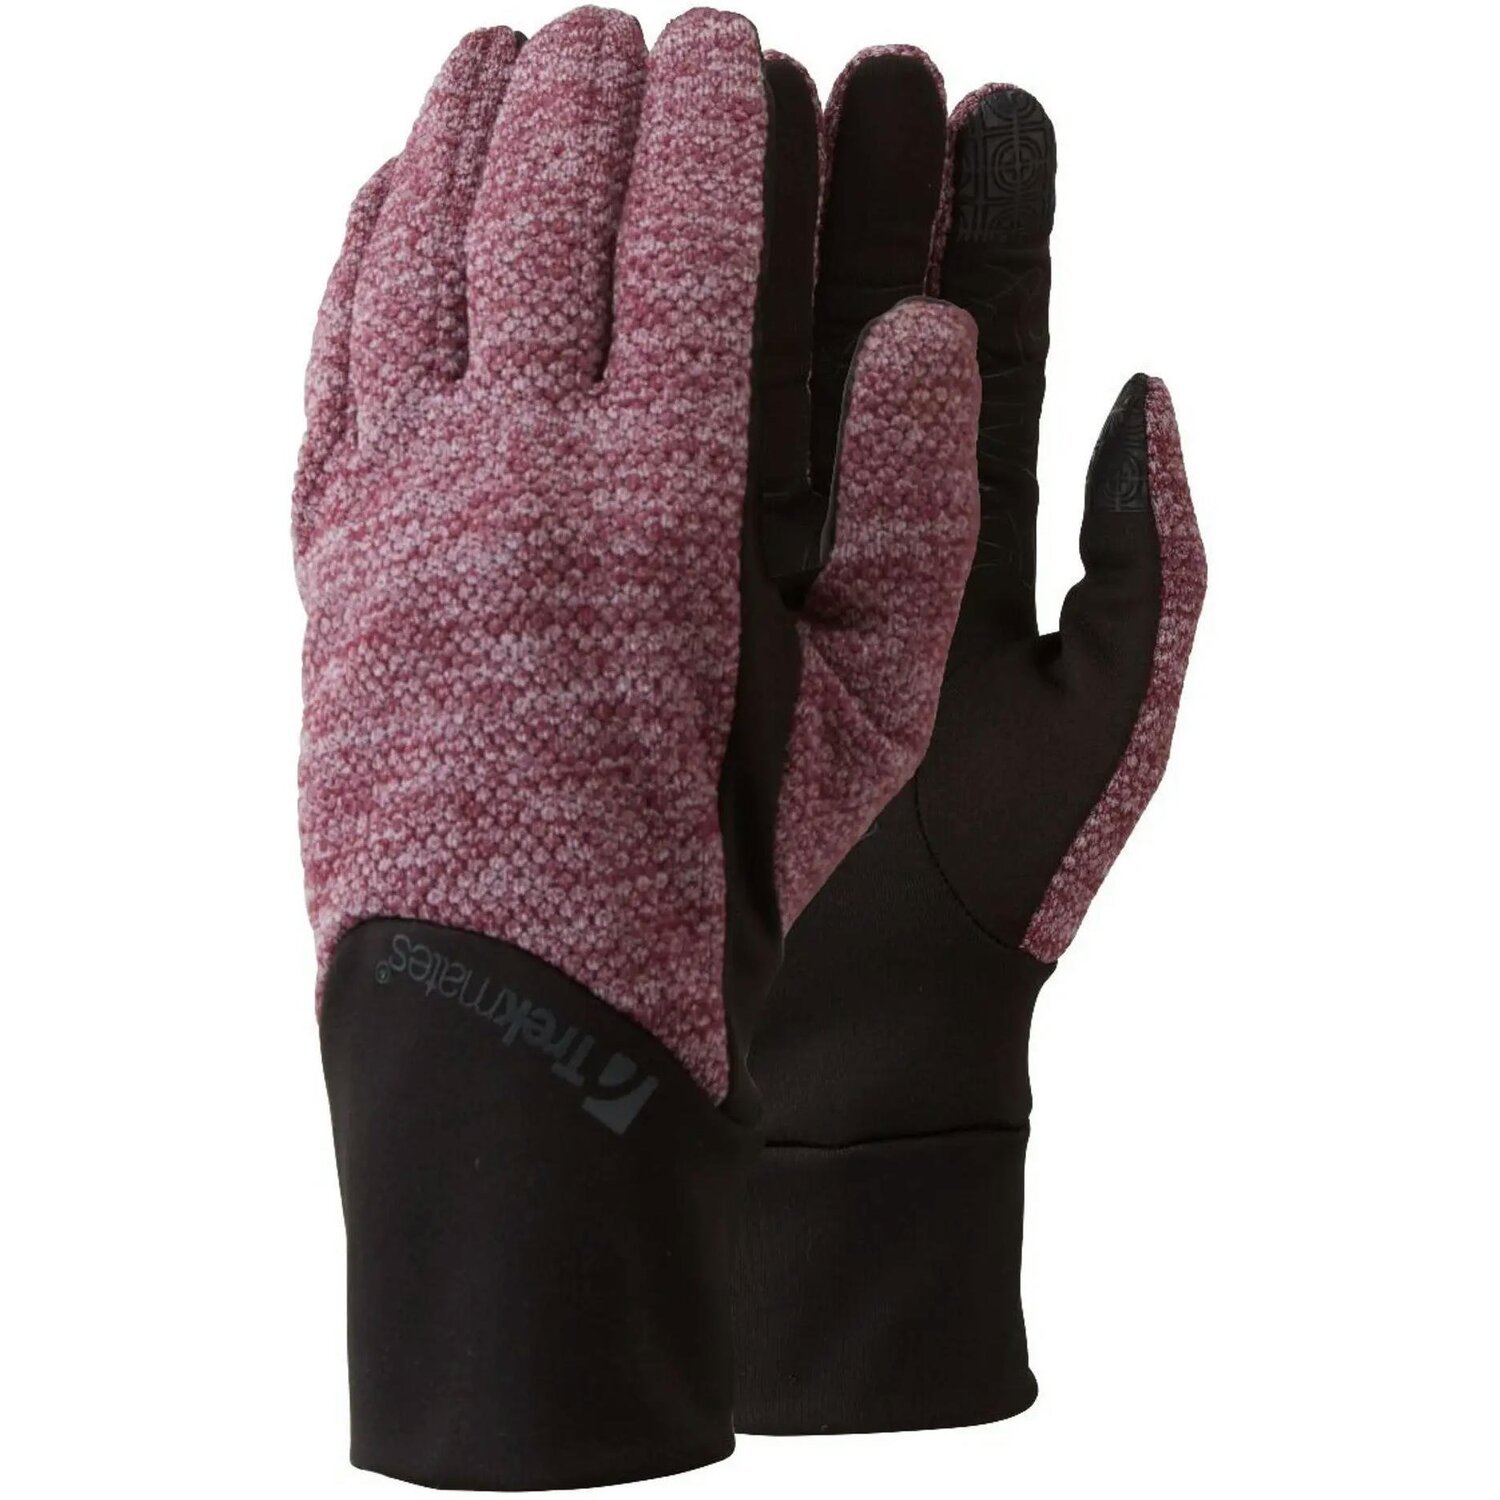 Перчатки Trekmates Harland Glove TM-006305 aubergine - L - фиолетовый/черный фото 